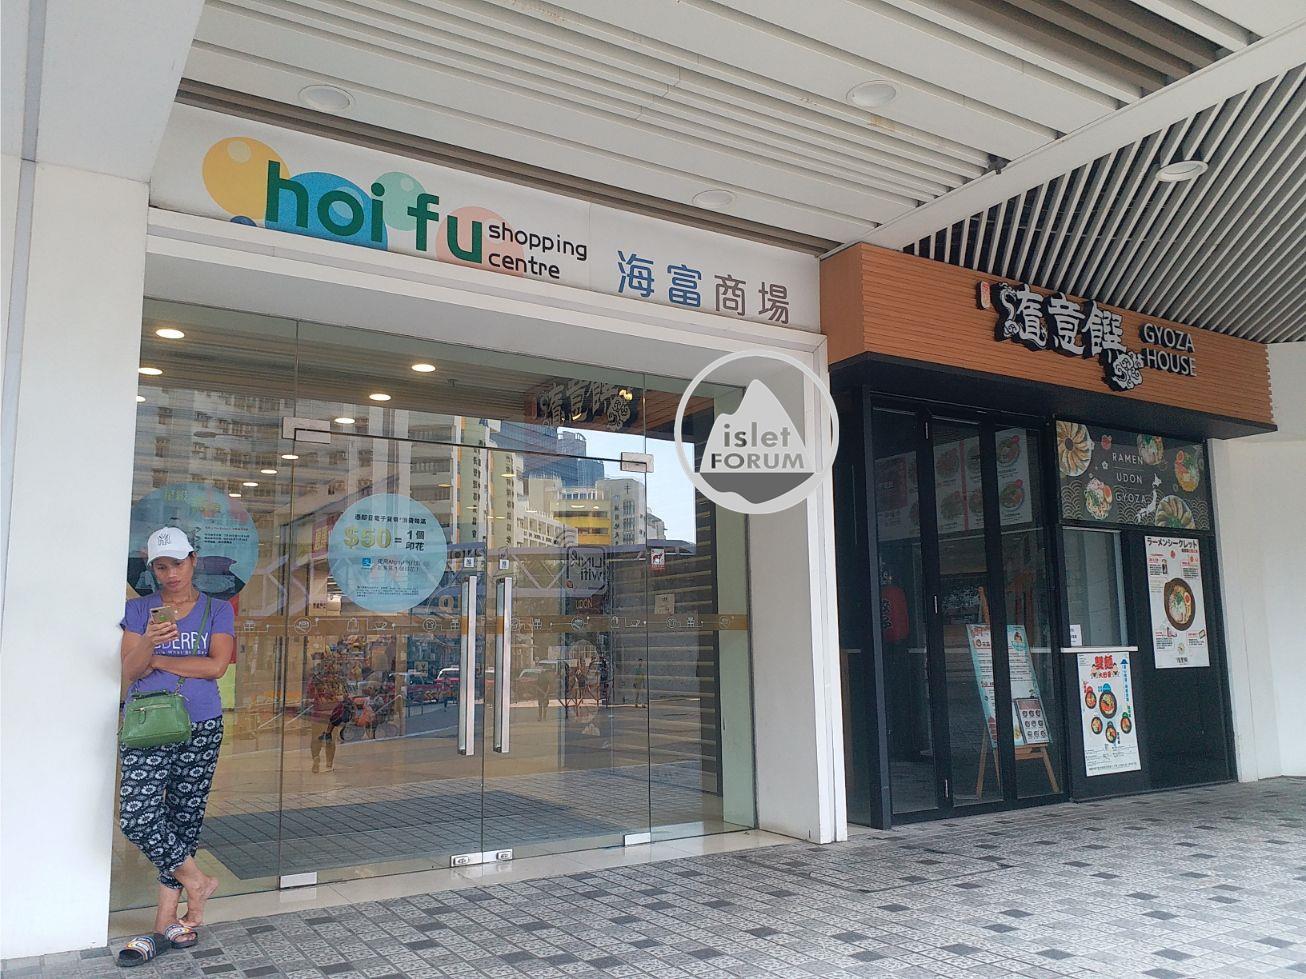 海富商場 Hoi Fu Shopping Centre (4).jpg